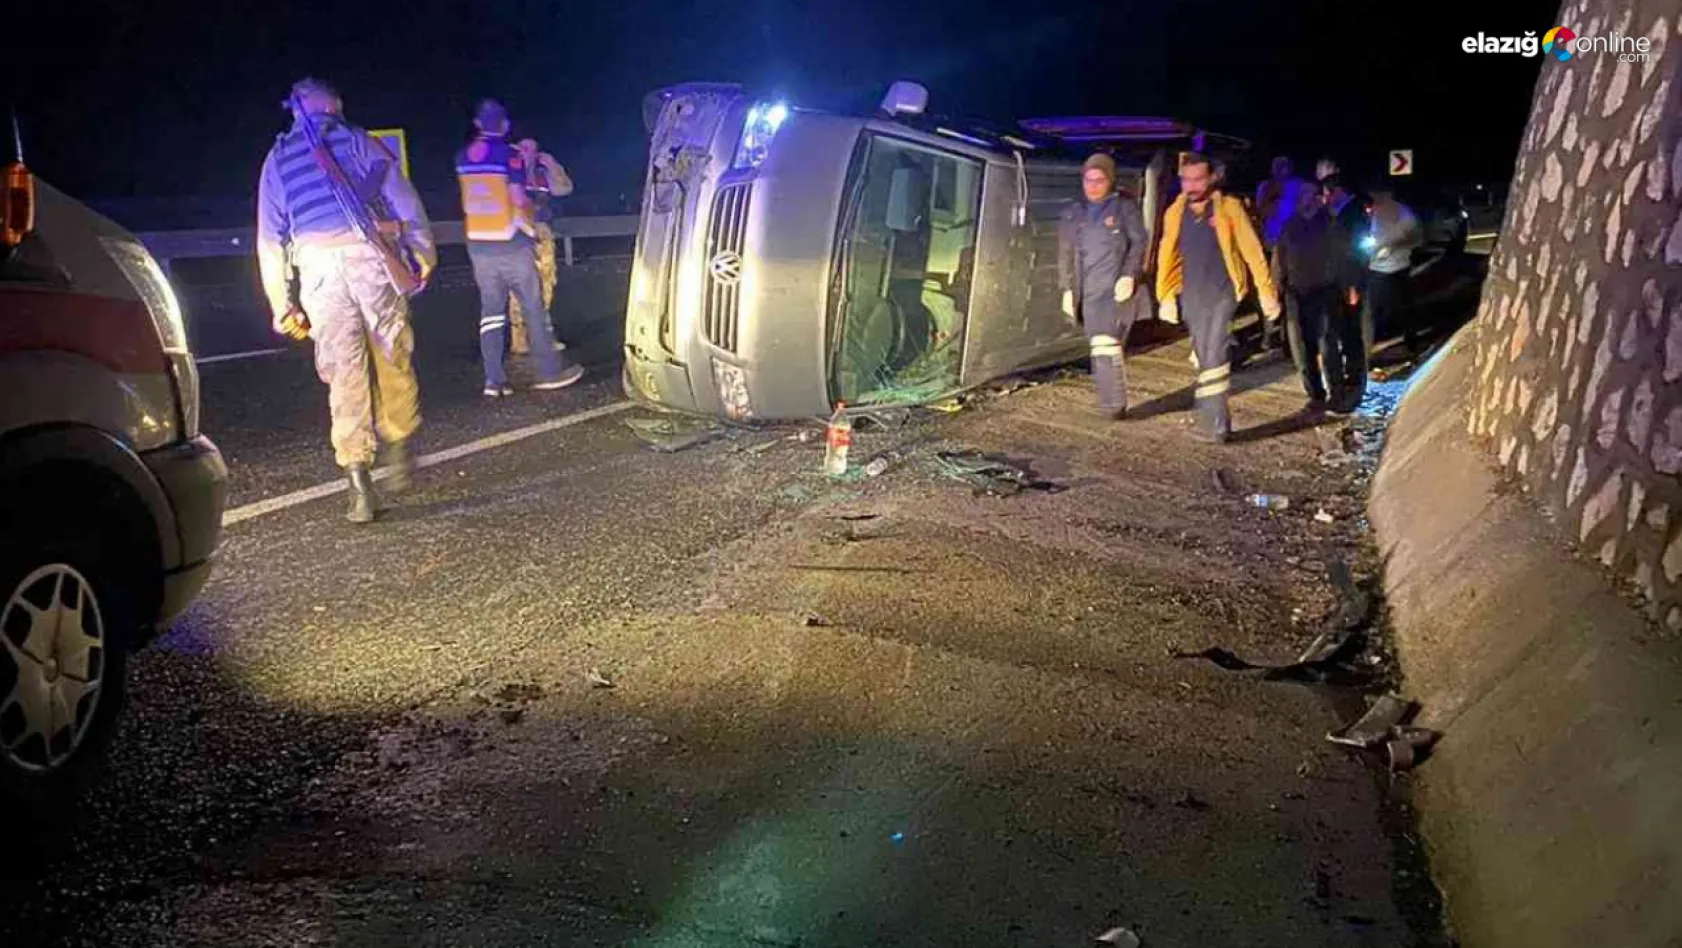 Elazığ-Diyarbakır karayolunda kaza! 4 kişi yaralandı